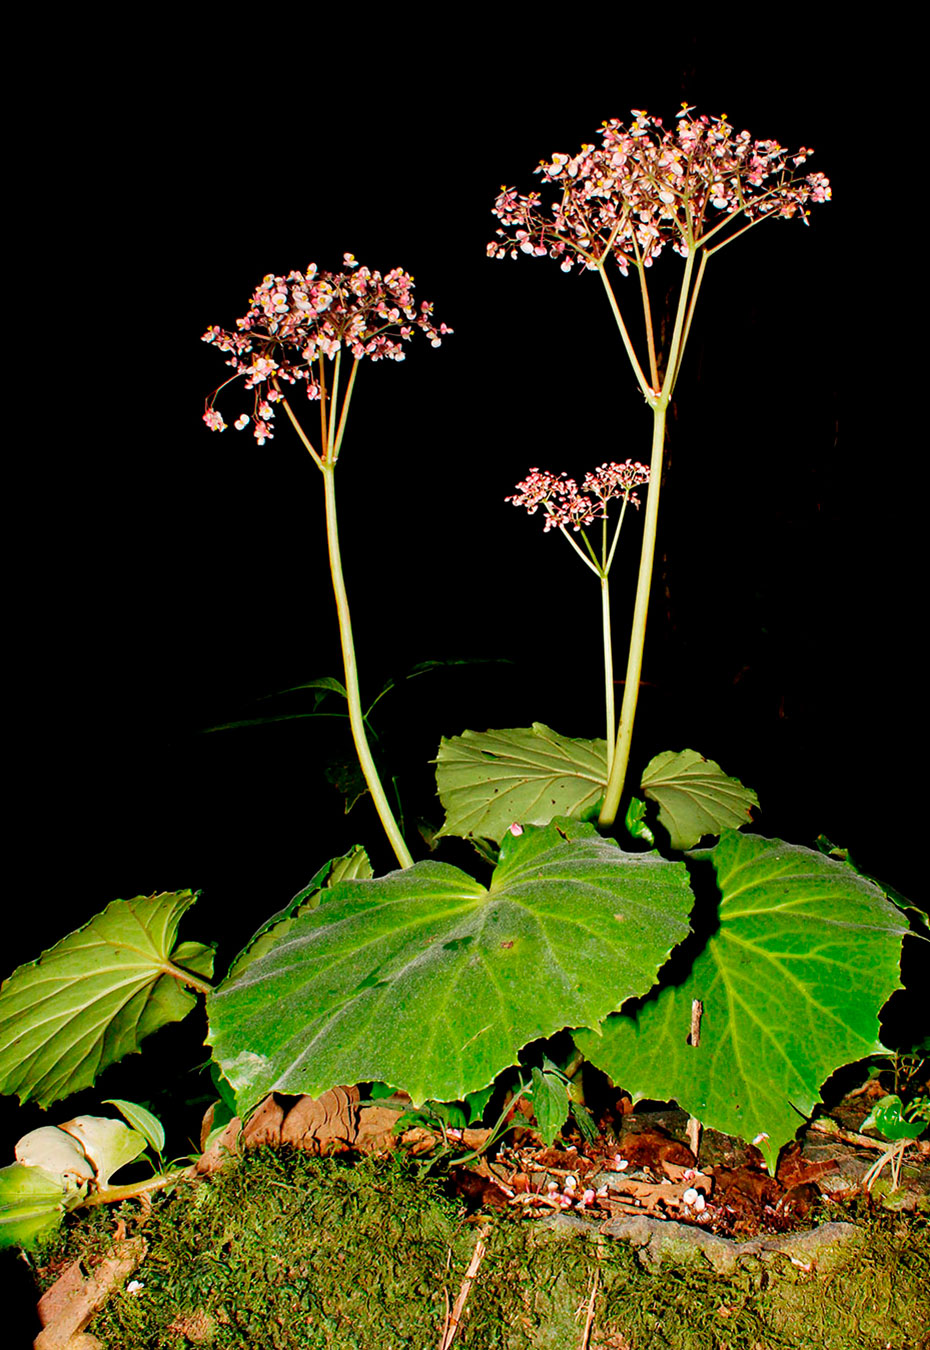 Begonia quaternata, especie endémica de Costa Rica y Oeste de Panamá